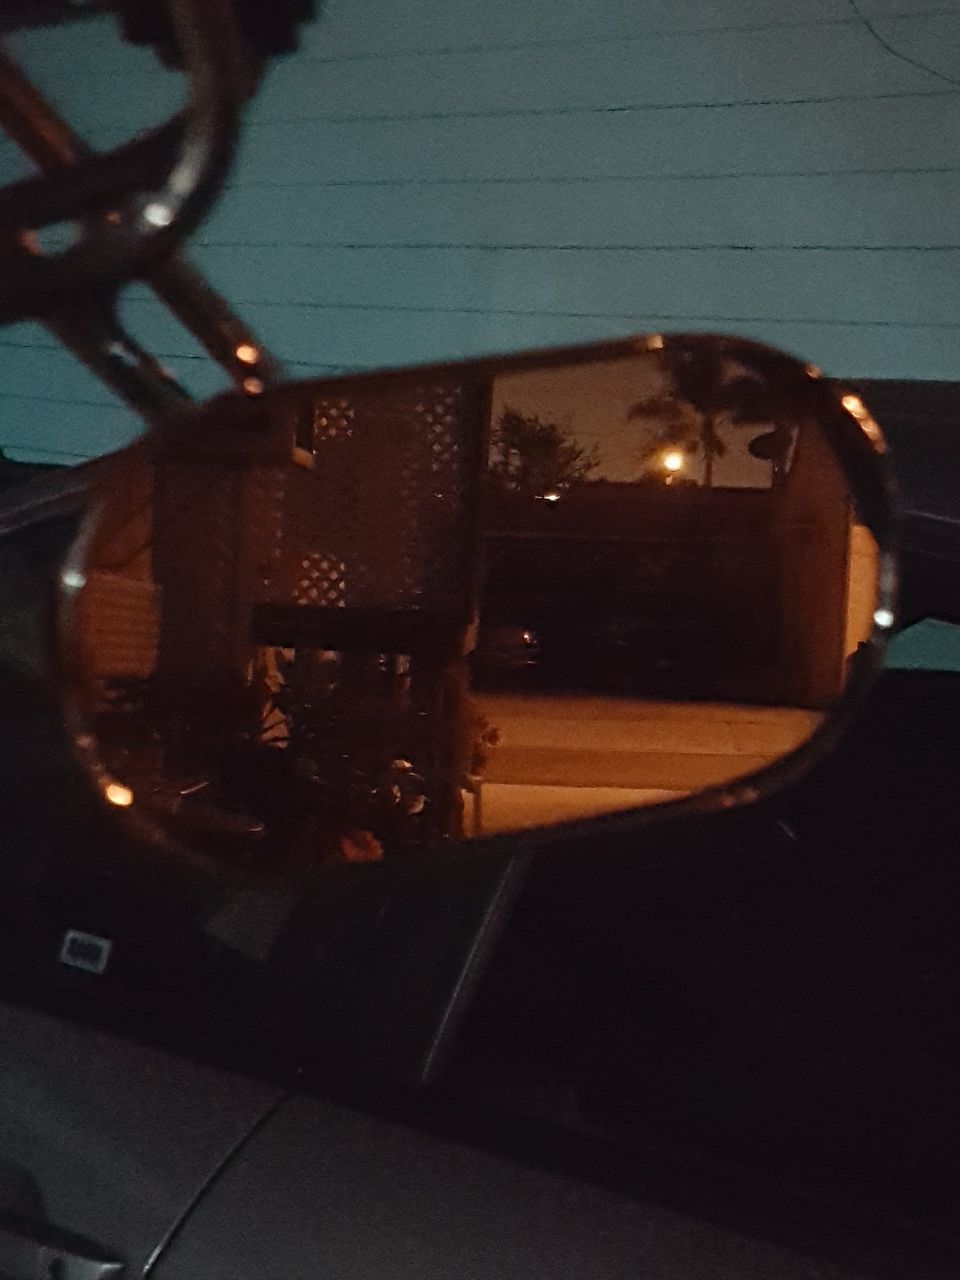 CLOSE-UP OF CAR AT NIGHT